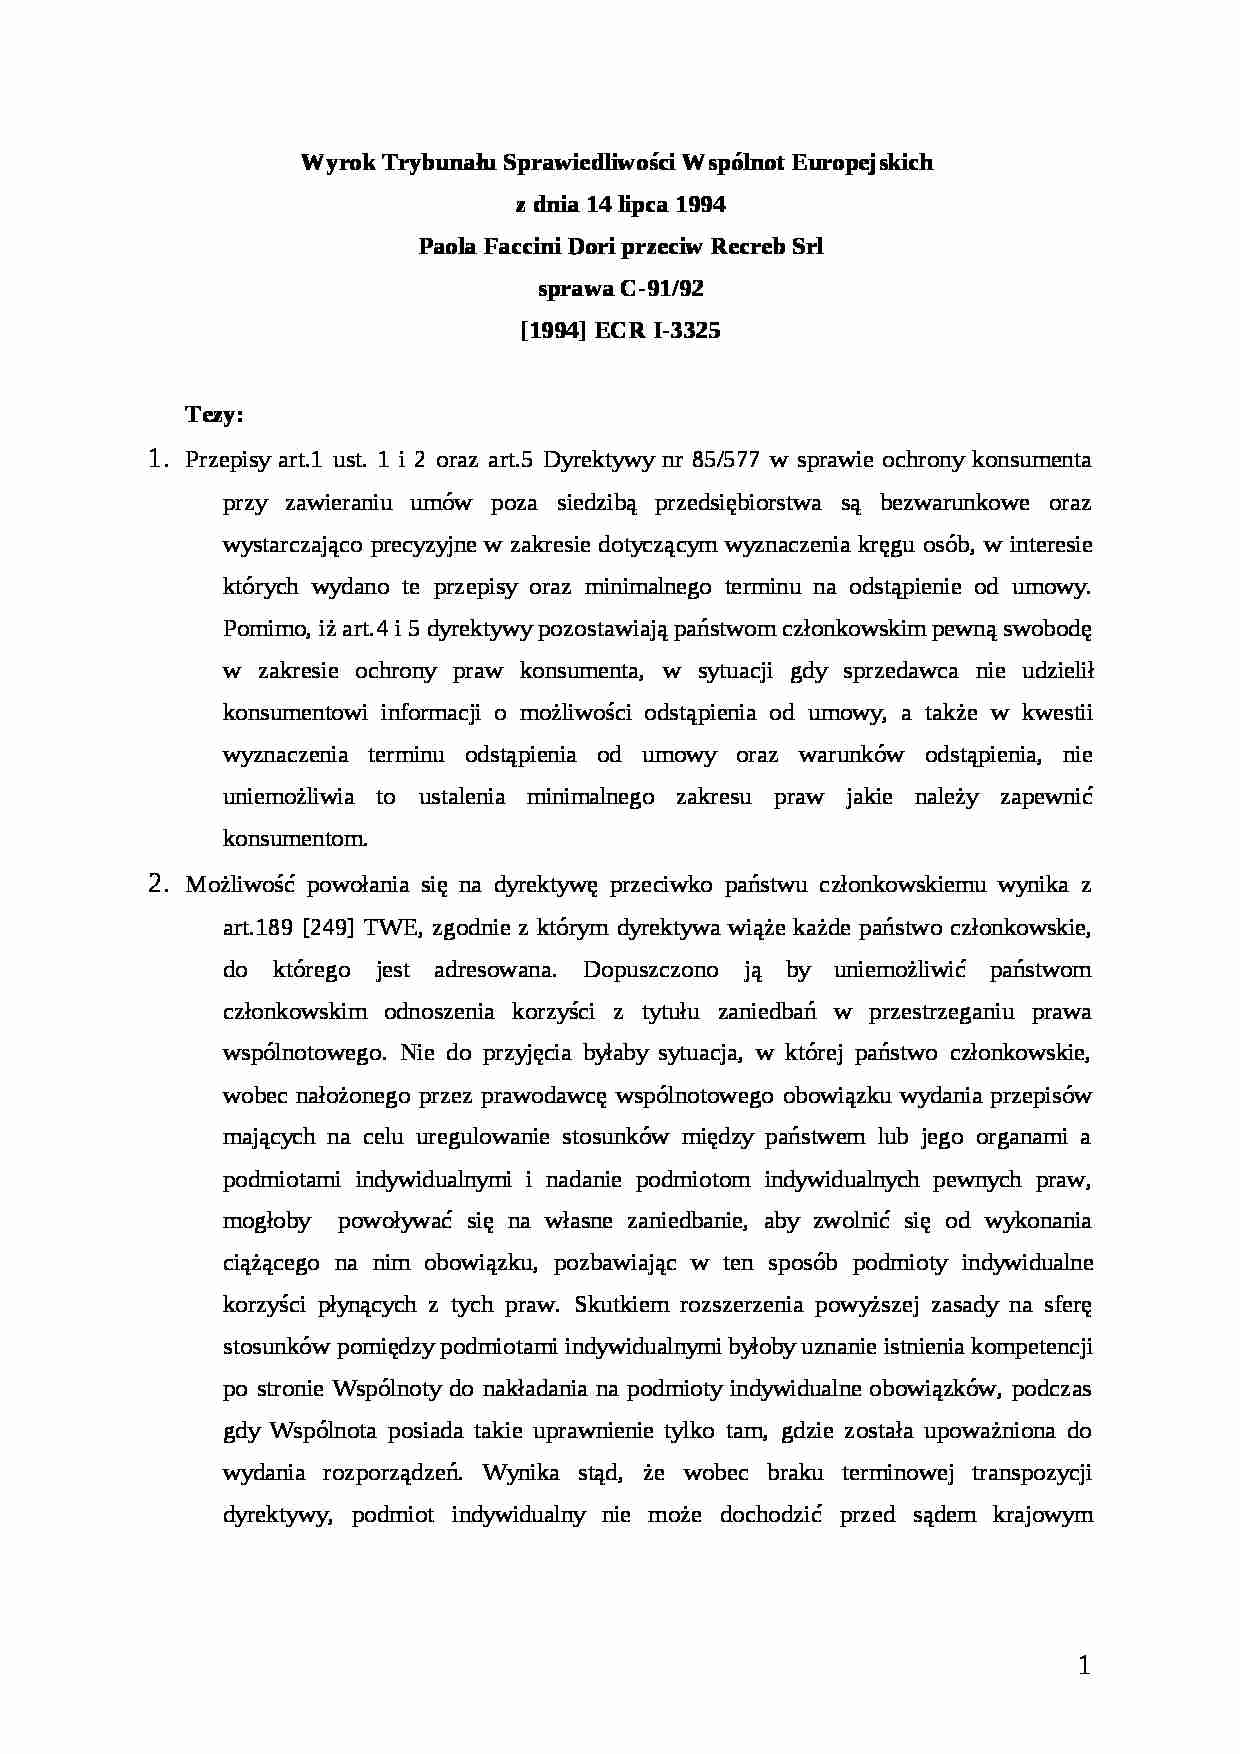 Prawo instytucjonalne Unii Europejskiej - Faccini Dori - strona 1